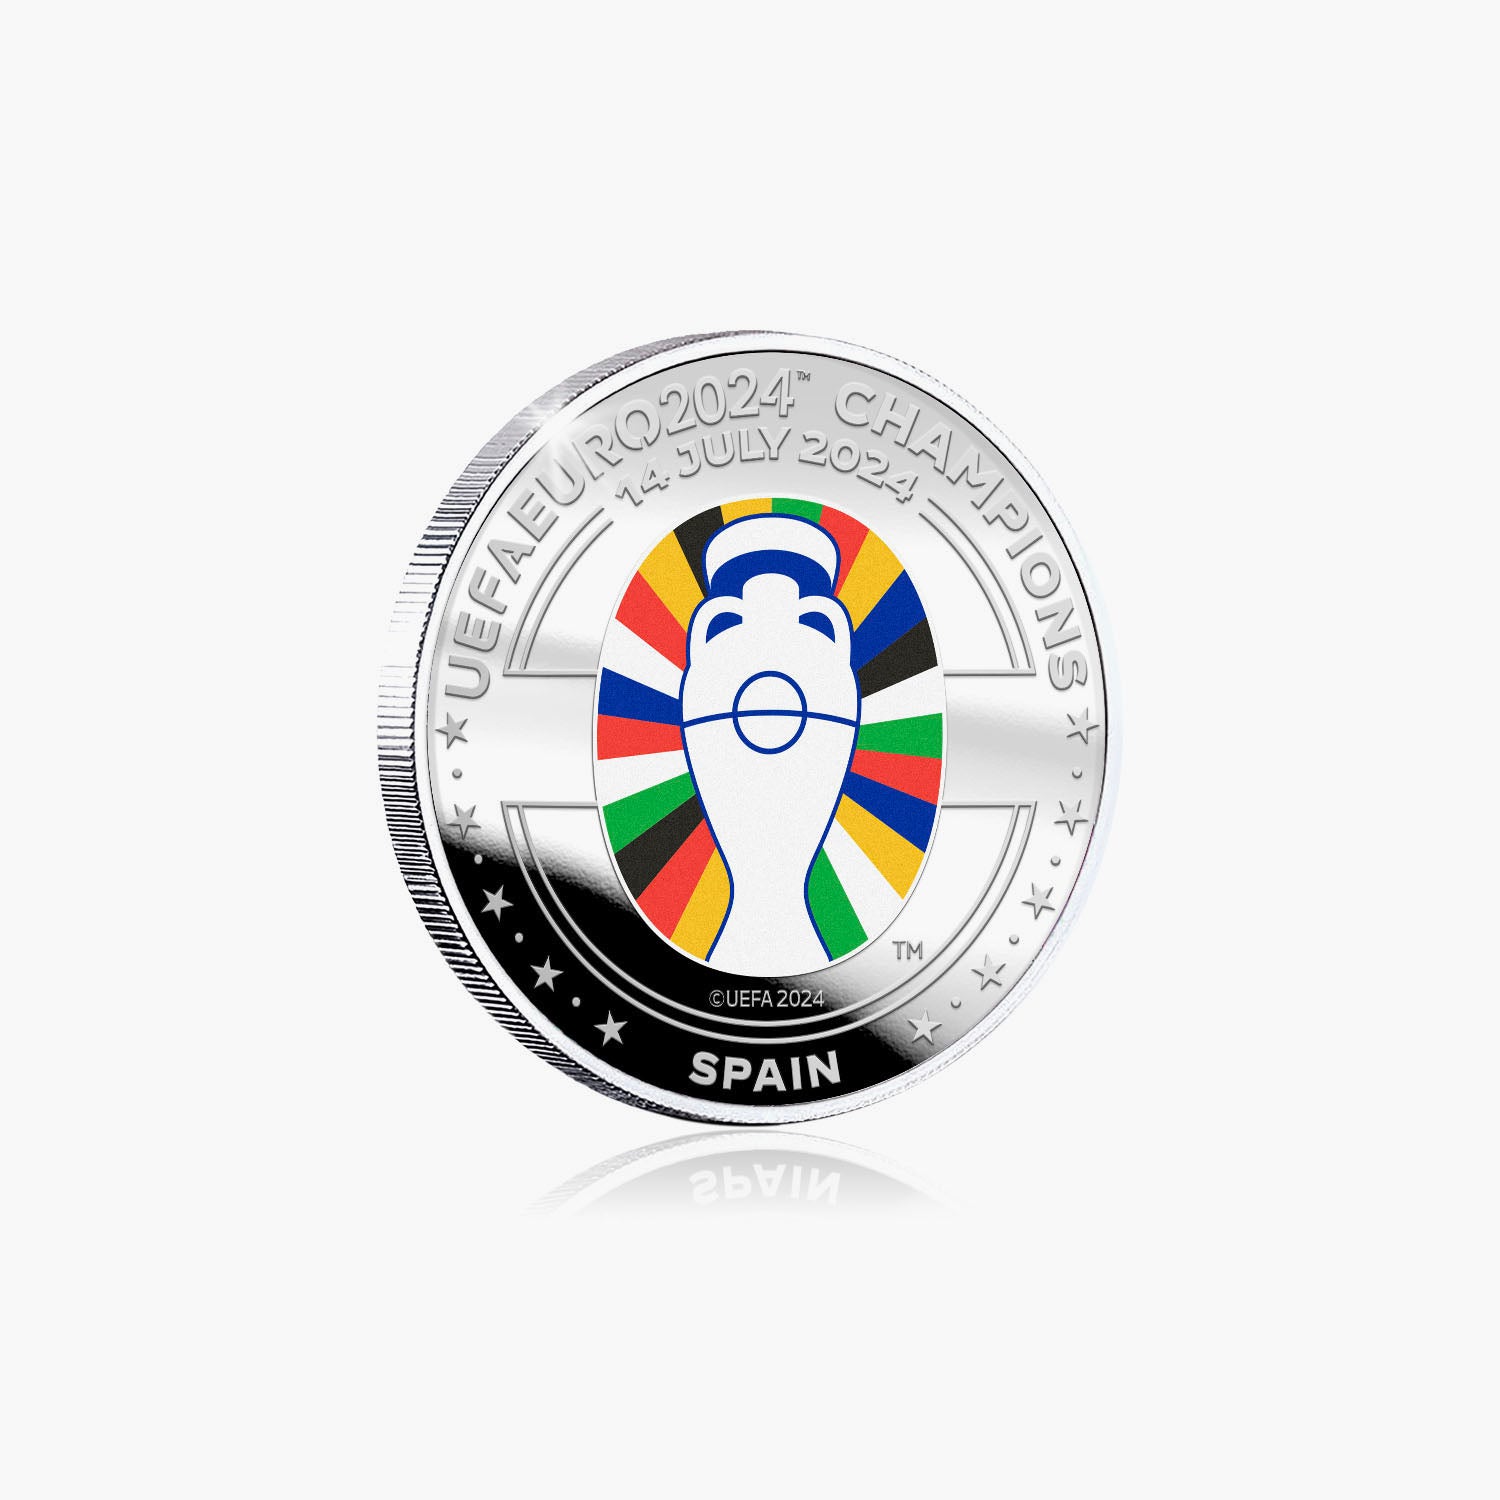 UEFA Euros 2024 Winners Spain 32mm Medal